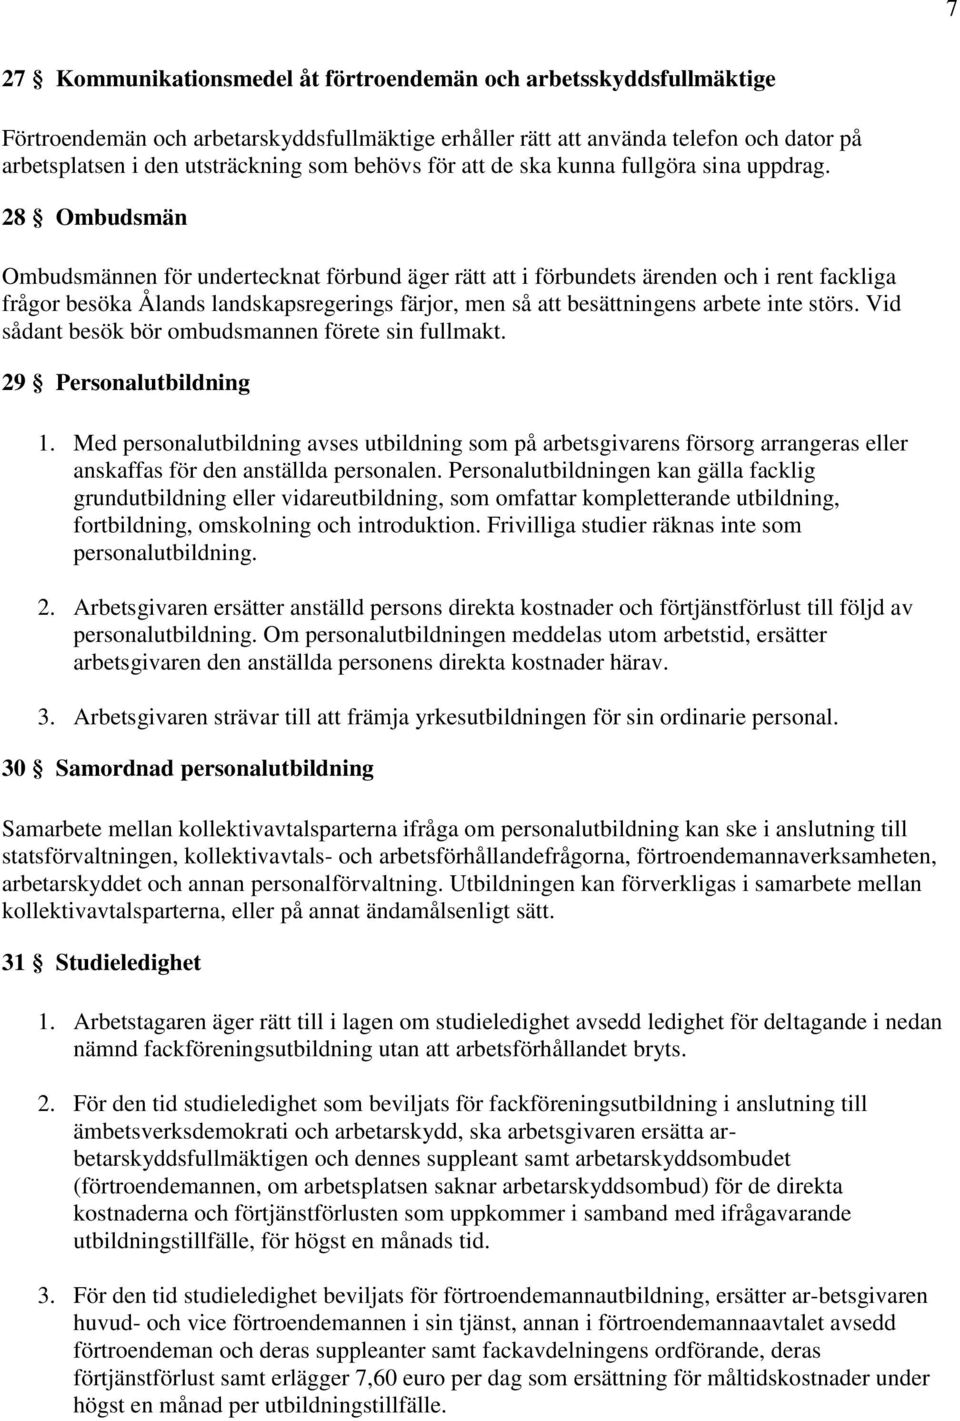 28 Ombudsmän Ombudsmännen för undertecknat förbund äger rätt att i förbundets ärenden och i rent fackliga frågor besöka Ålands landskapsregerings färjor, men så att besättningens arbete inte störs.